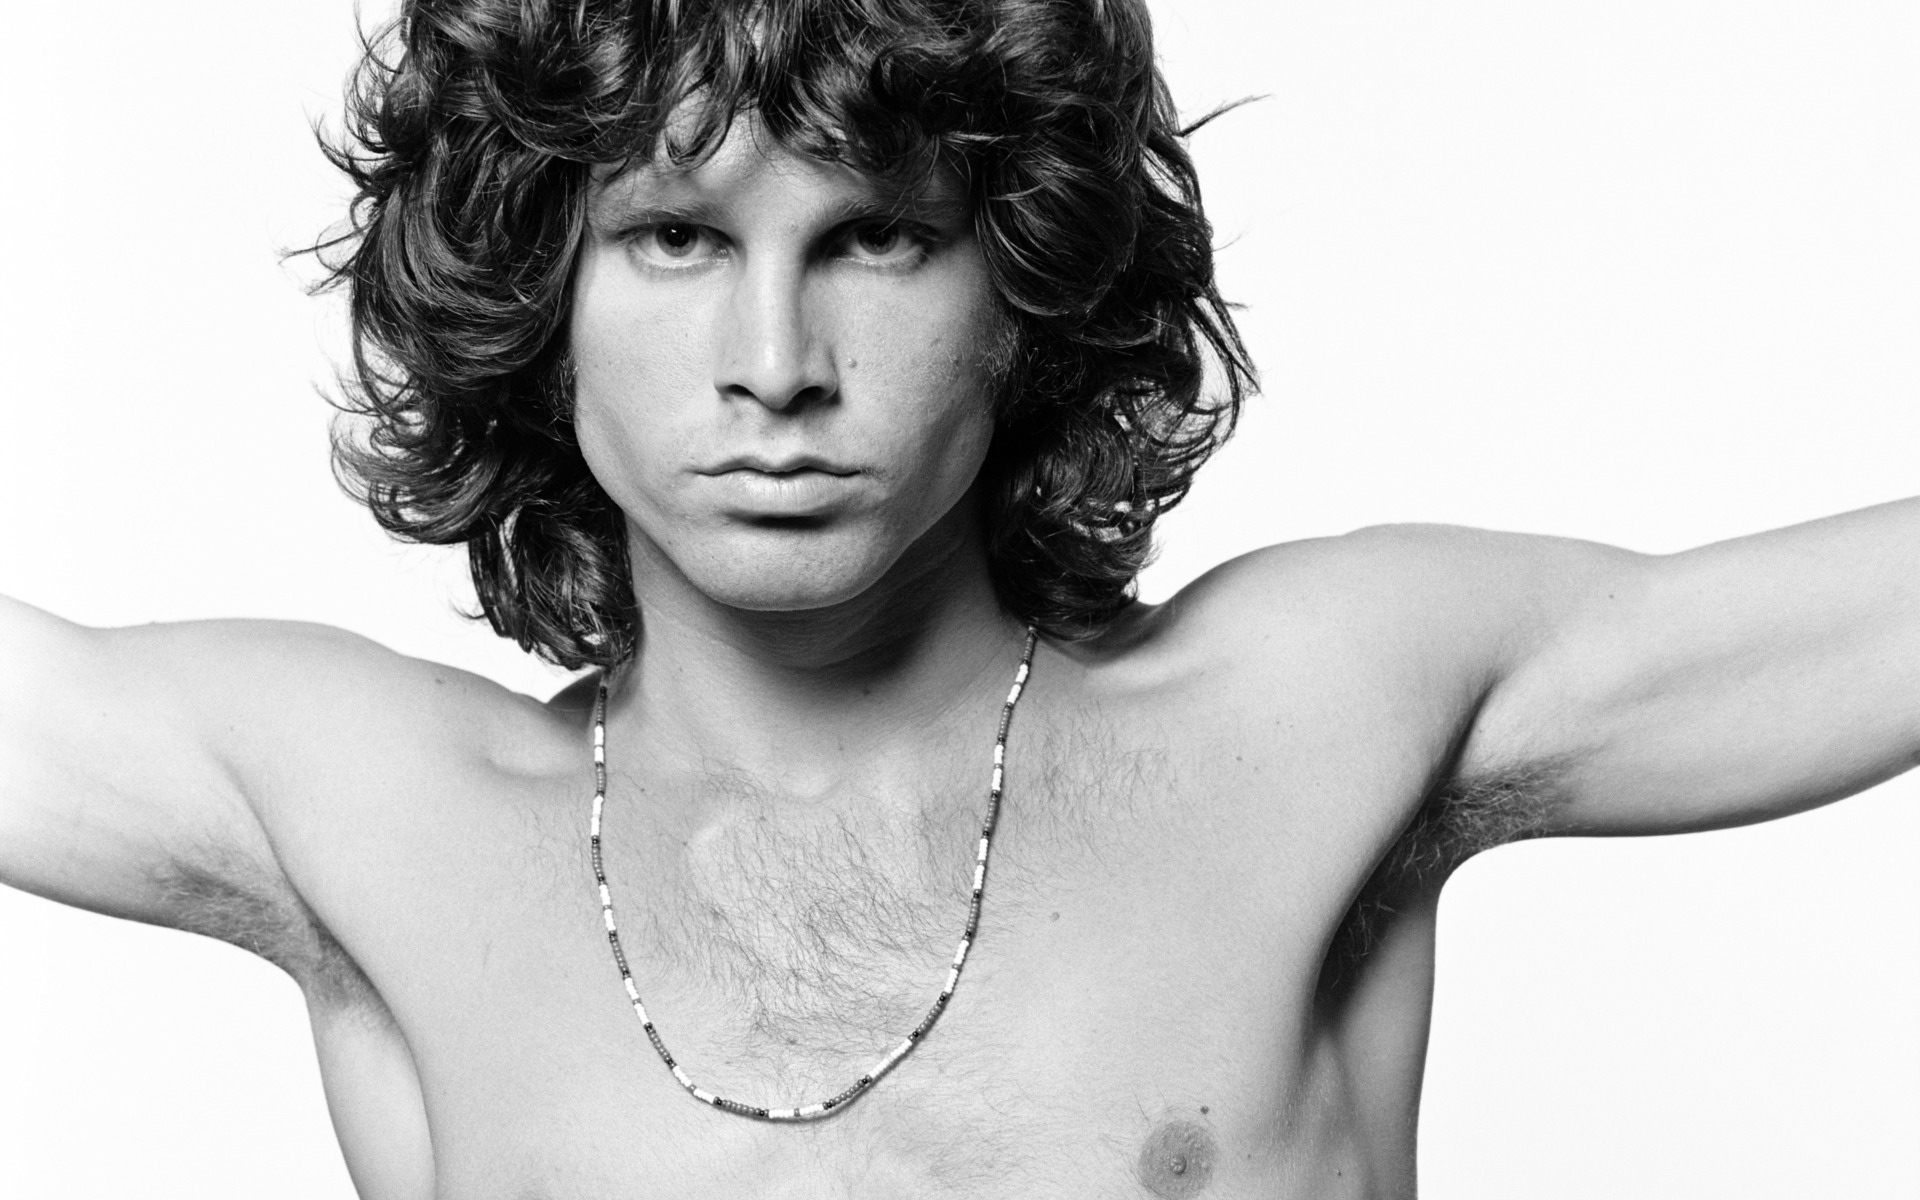 Jim Morrison per epi